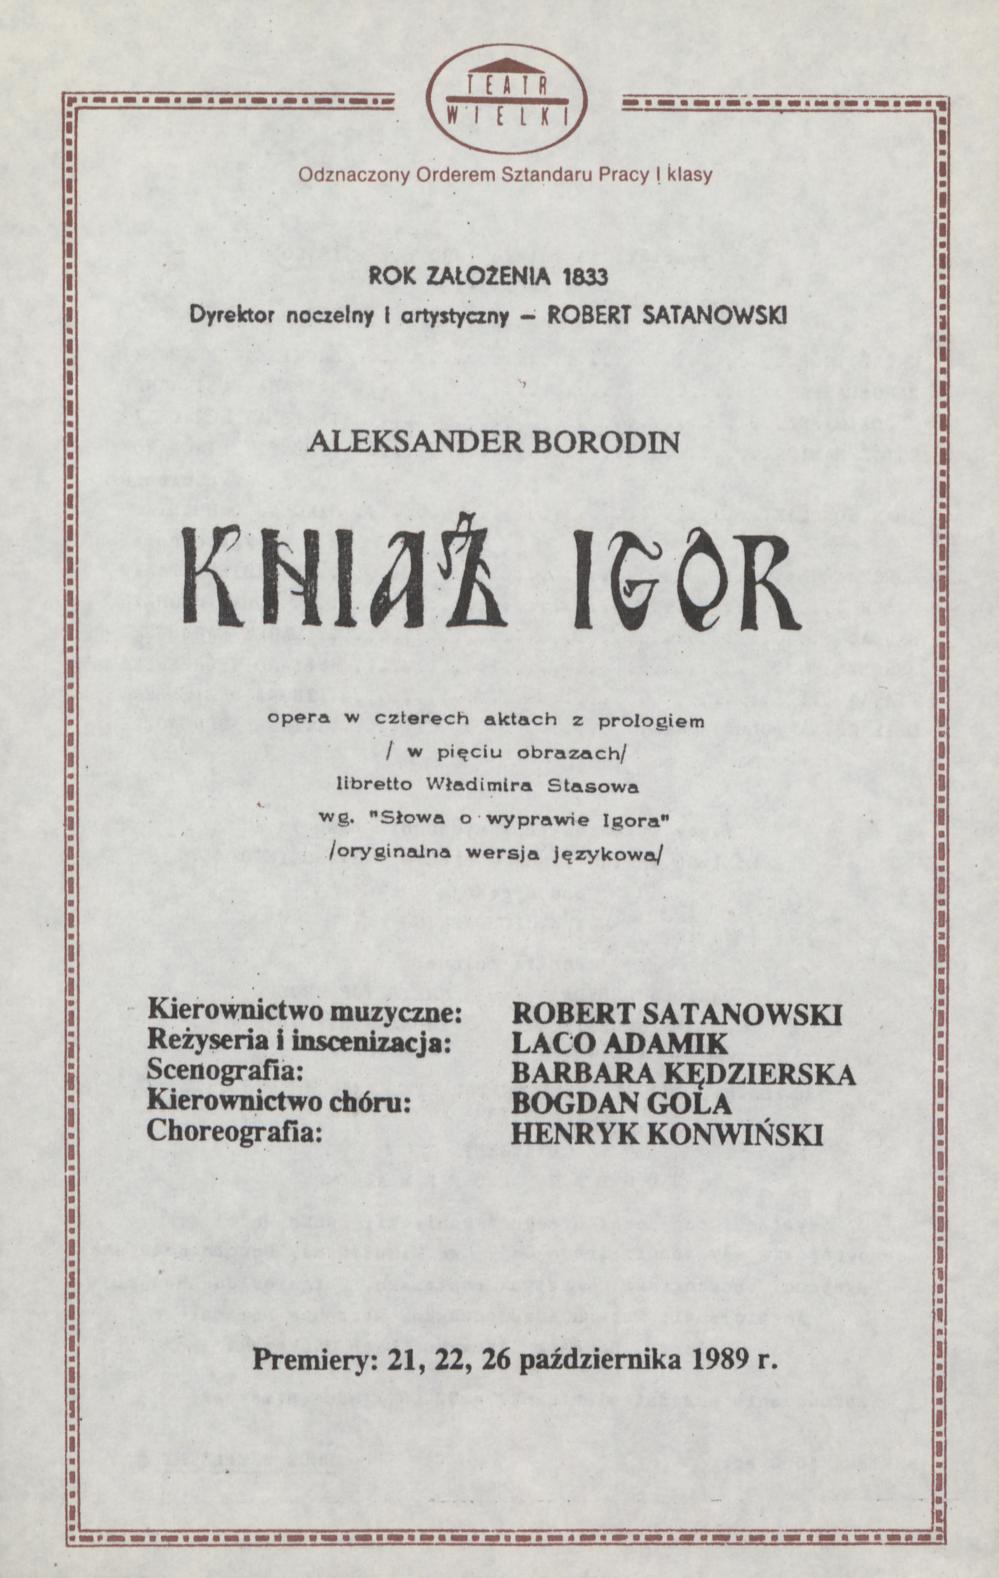 Wkładka obsadowa „Kniaź Igor” Aleksander Borodin 15-02-1990